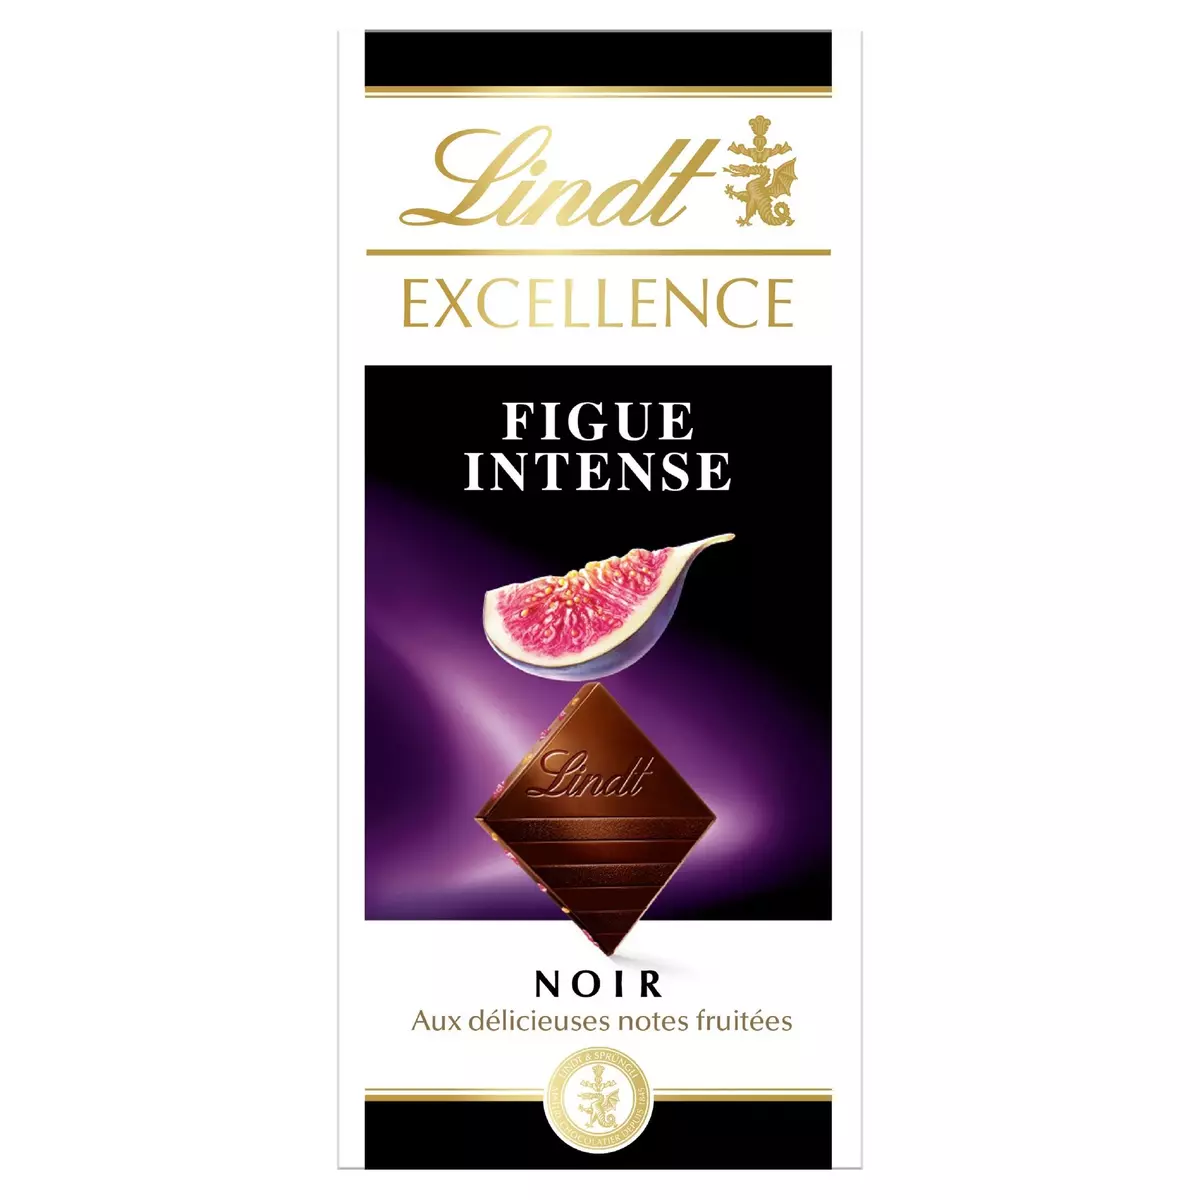 LINDT Excellence tablette de chocolat noir dégustation figue intense 1 pièce 100g